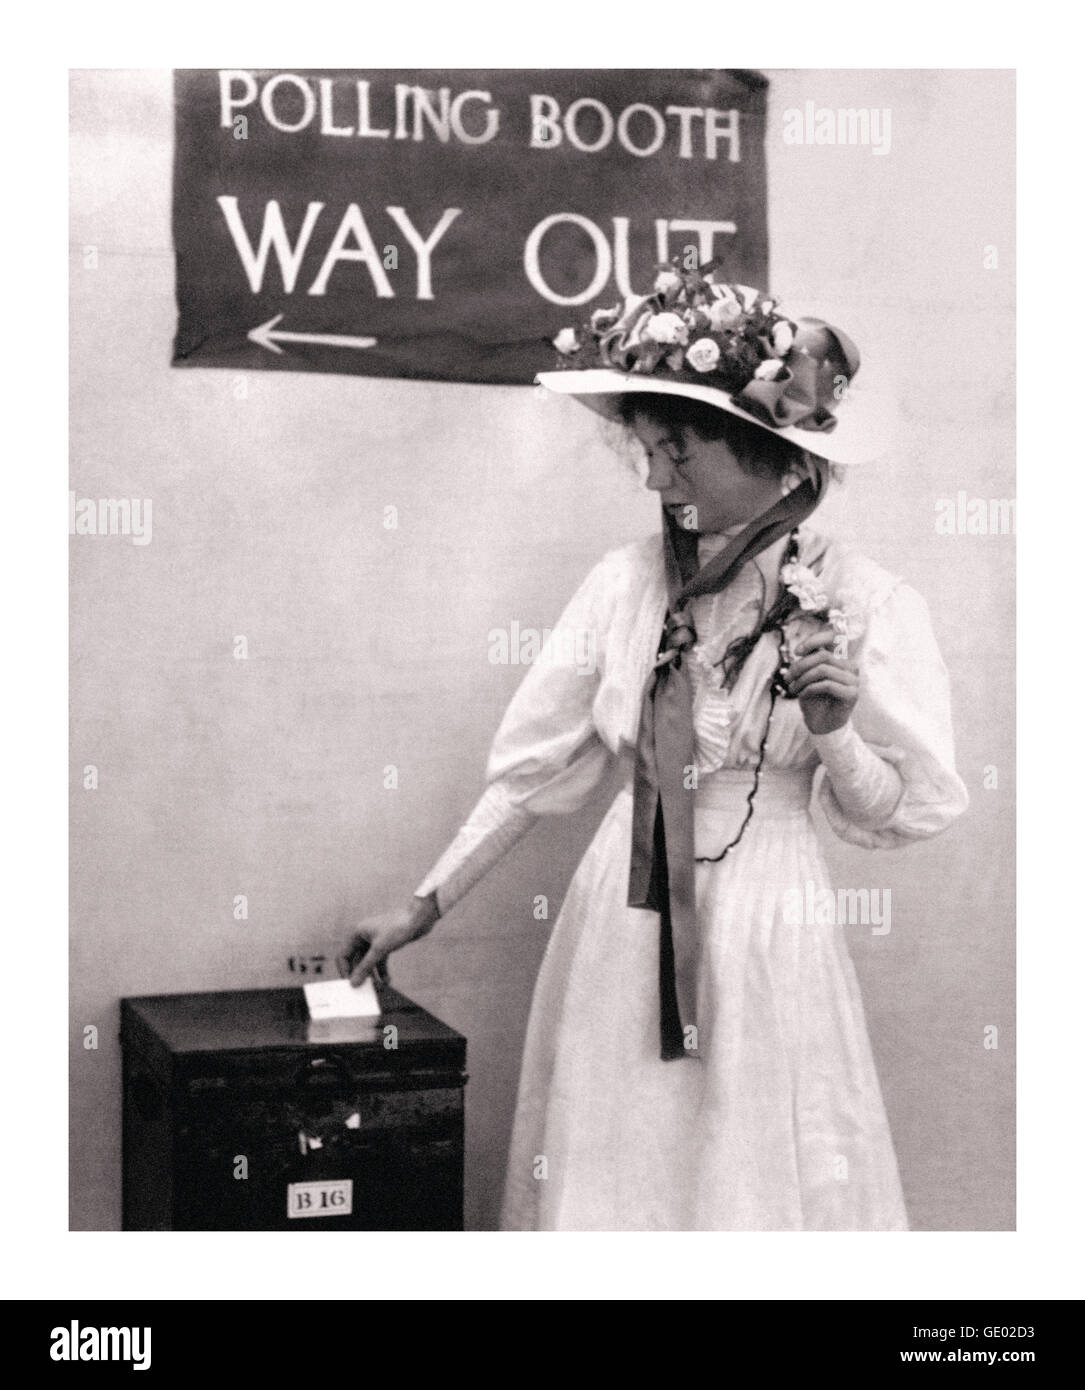 Movimento suffragette Christabel Pankhurst in uno stand di voto del Regno Unito circa 1910. Era figlia di Emmeline Pankhurst e attivista politico del movimento suffragette che ha garantito il voto alle donne. Cofondatore dell’Unione sociale e politica delle donne WSPU Foto Stock